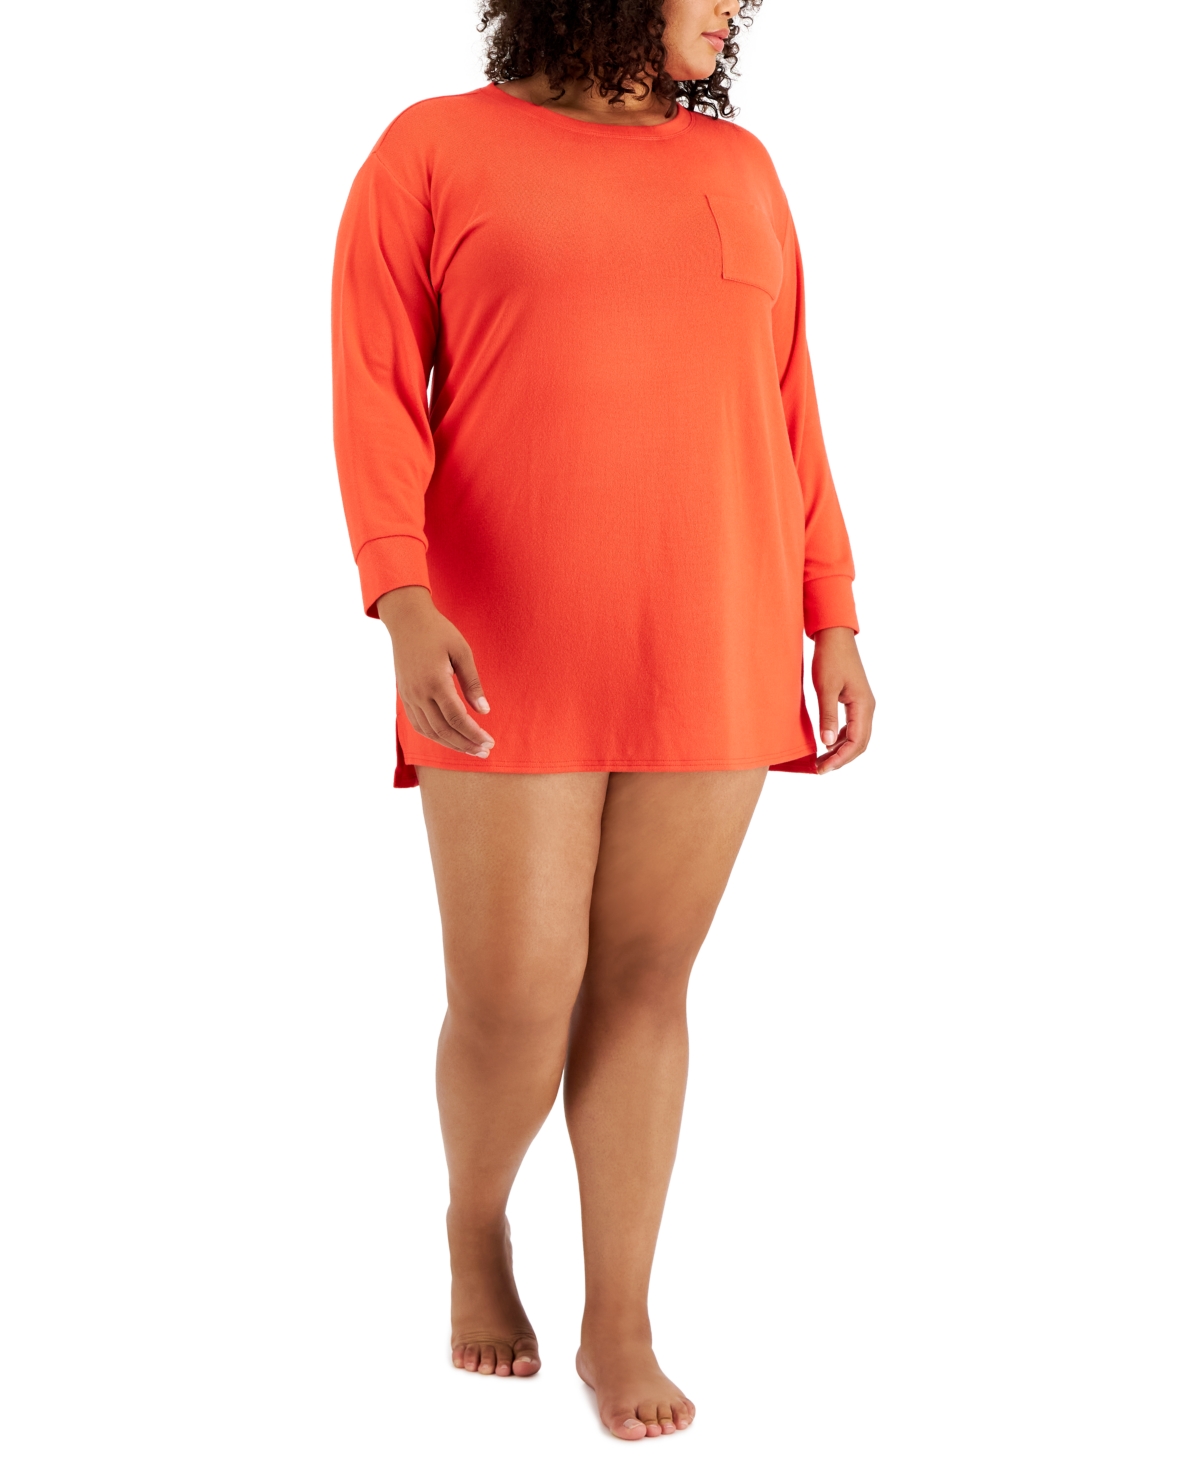 Jenni Plus Size Long Sleeve Sleepshirt, Created for Macy's